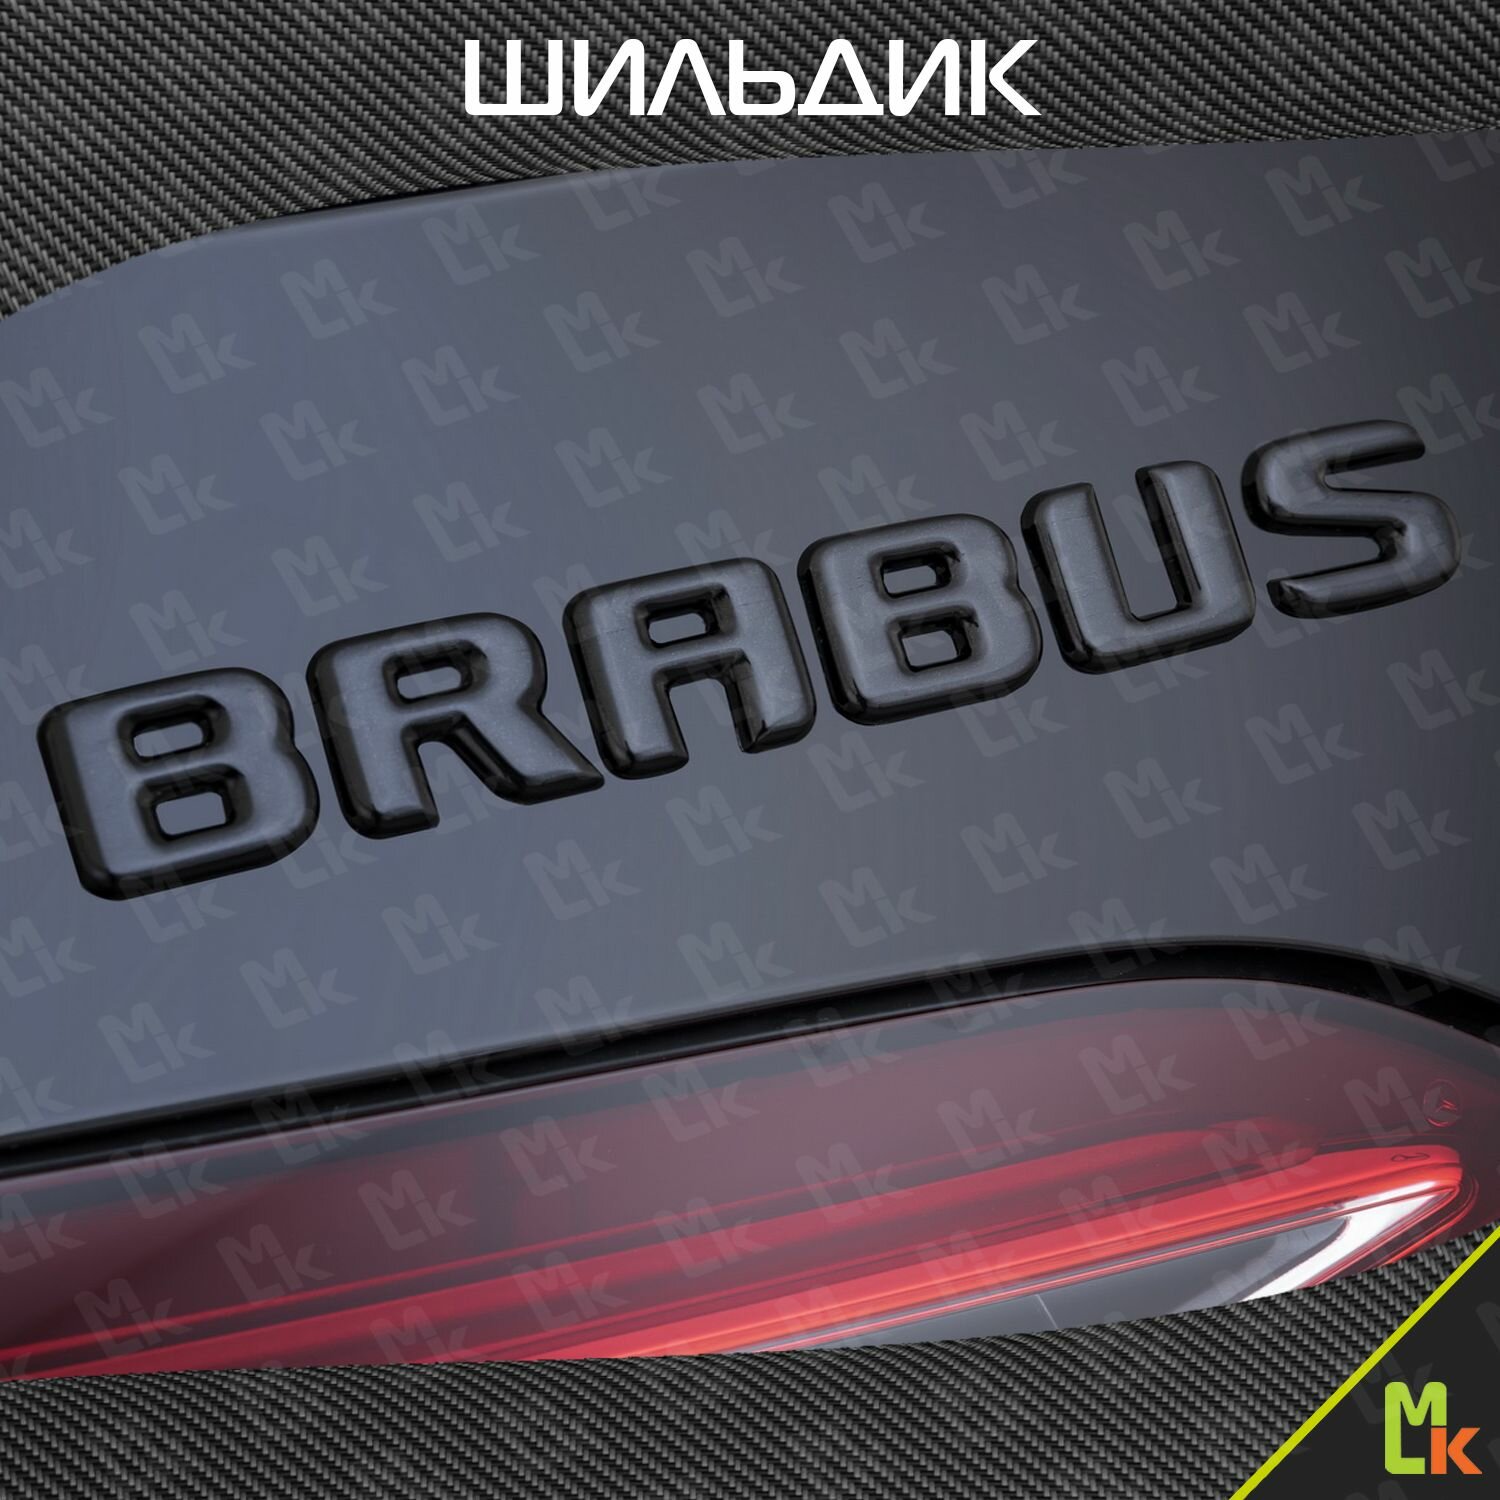 Шильдик c логотипом "Brabus", наклейка для автомобиля Mashinokom/ размер 200*25 мм